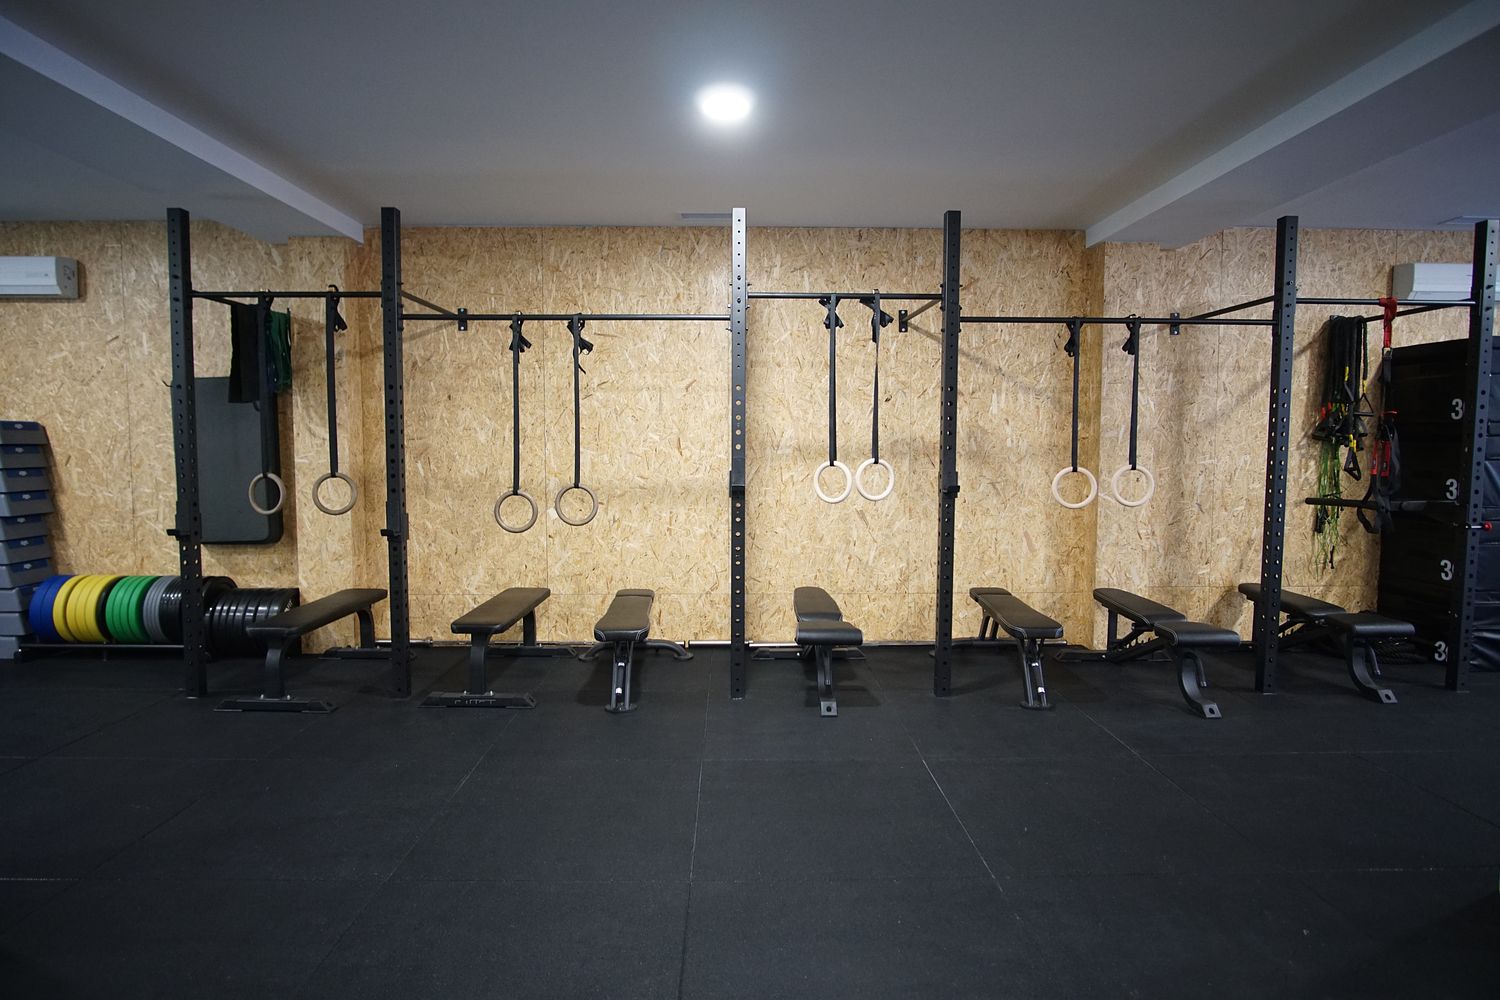 Estúdio Fit gym in Braga, Portugal